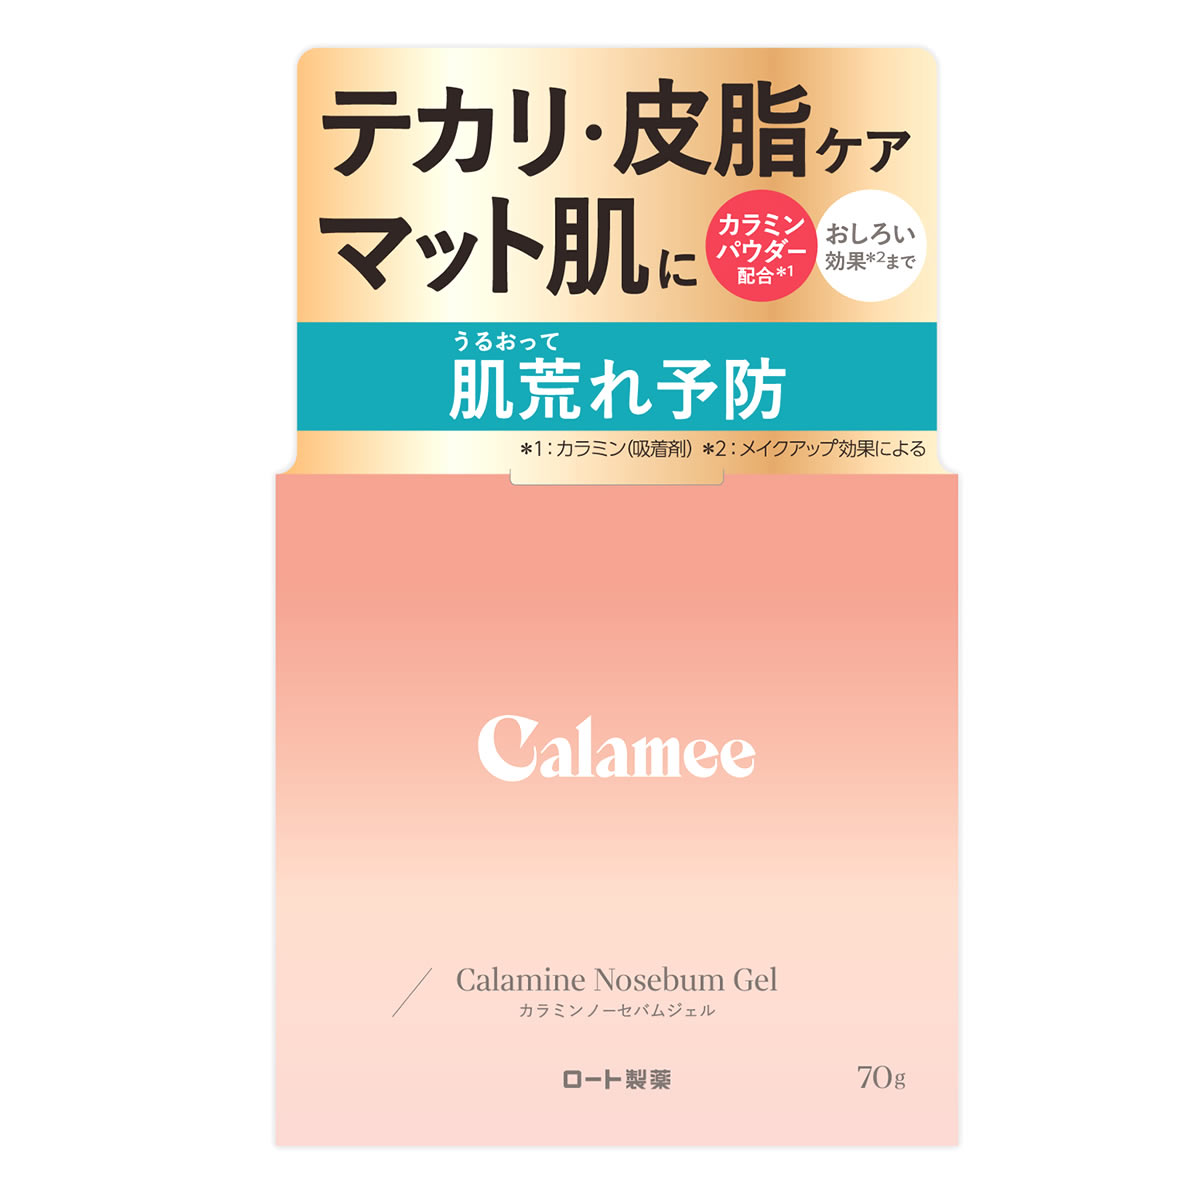 ロート製薬 カラミー カラミンノーセバムジェル (70g) ジェル状保湿液 Calamee